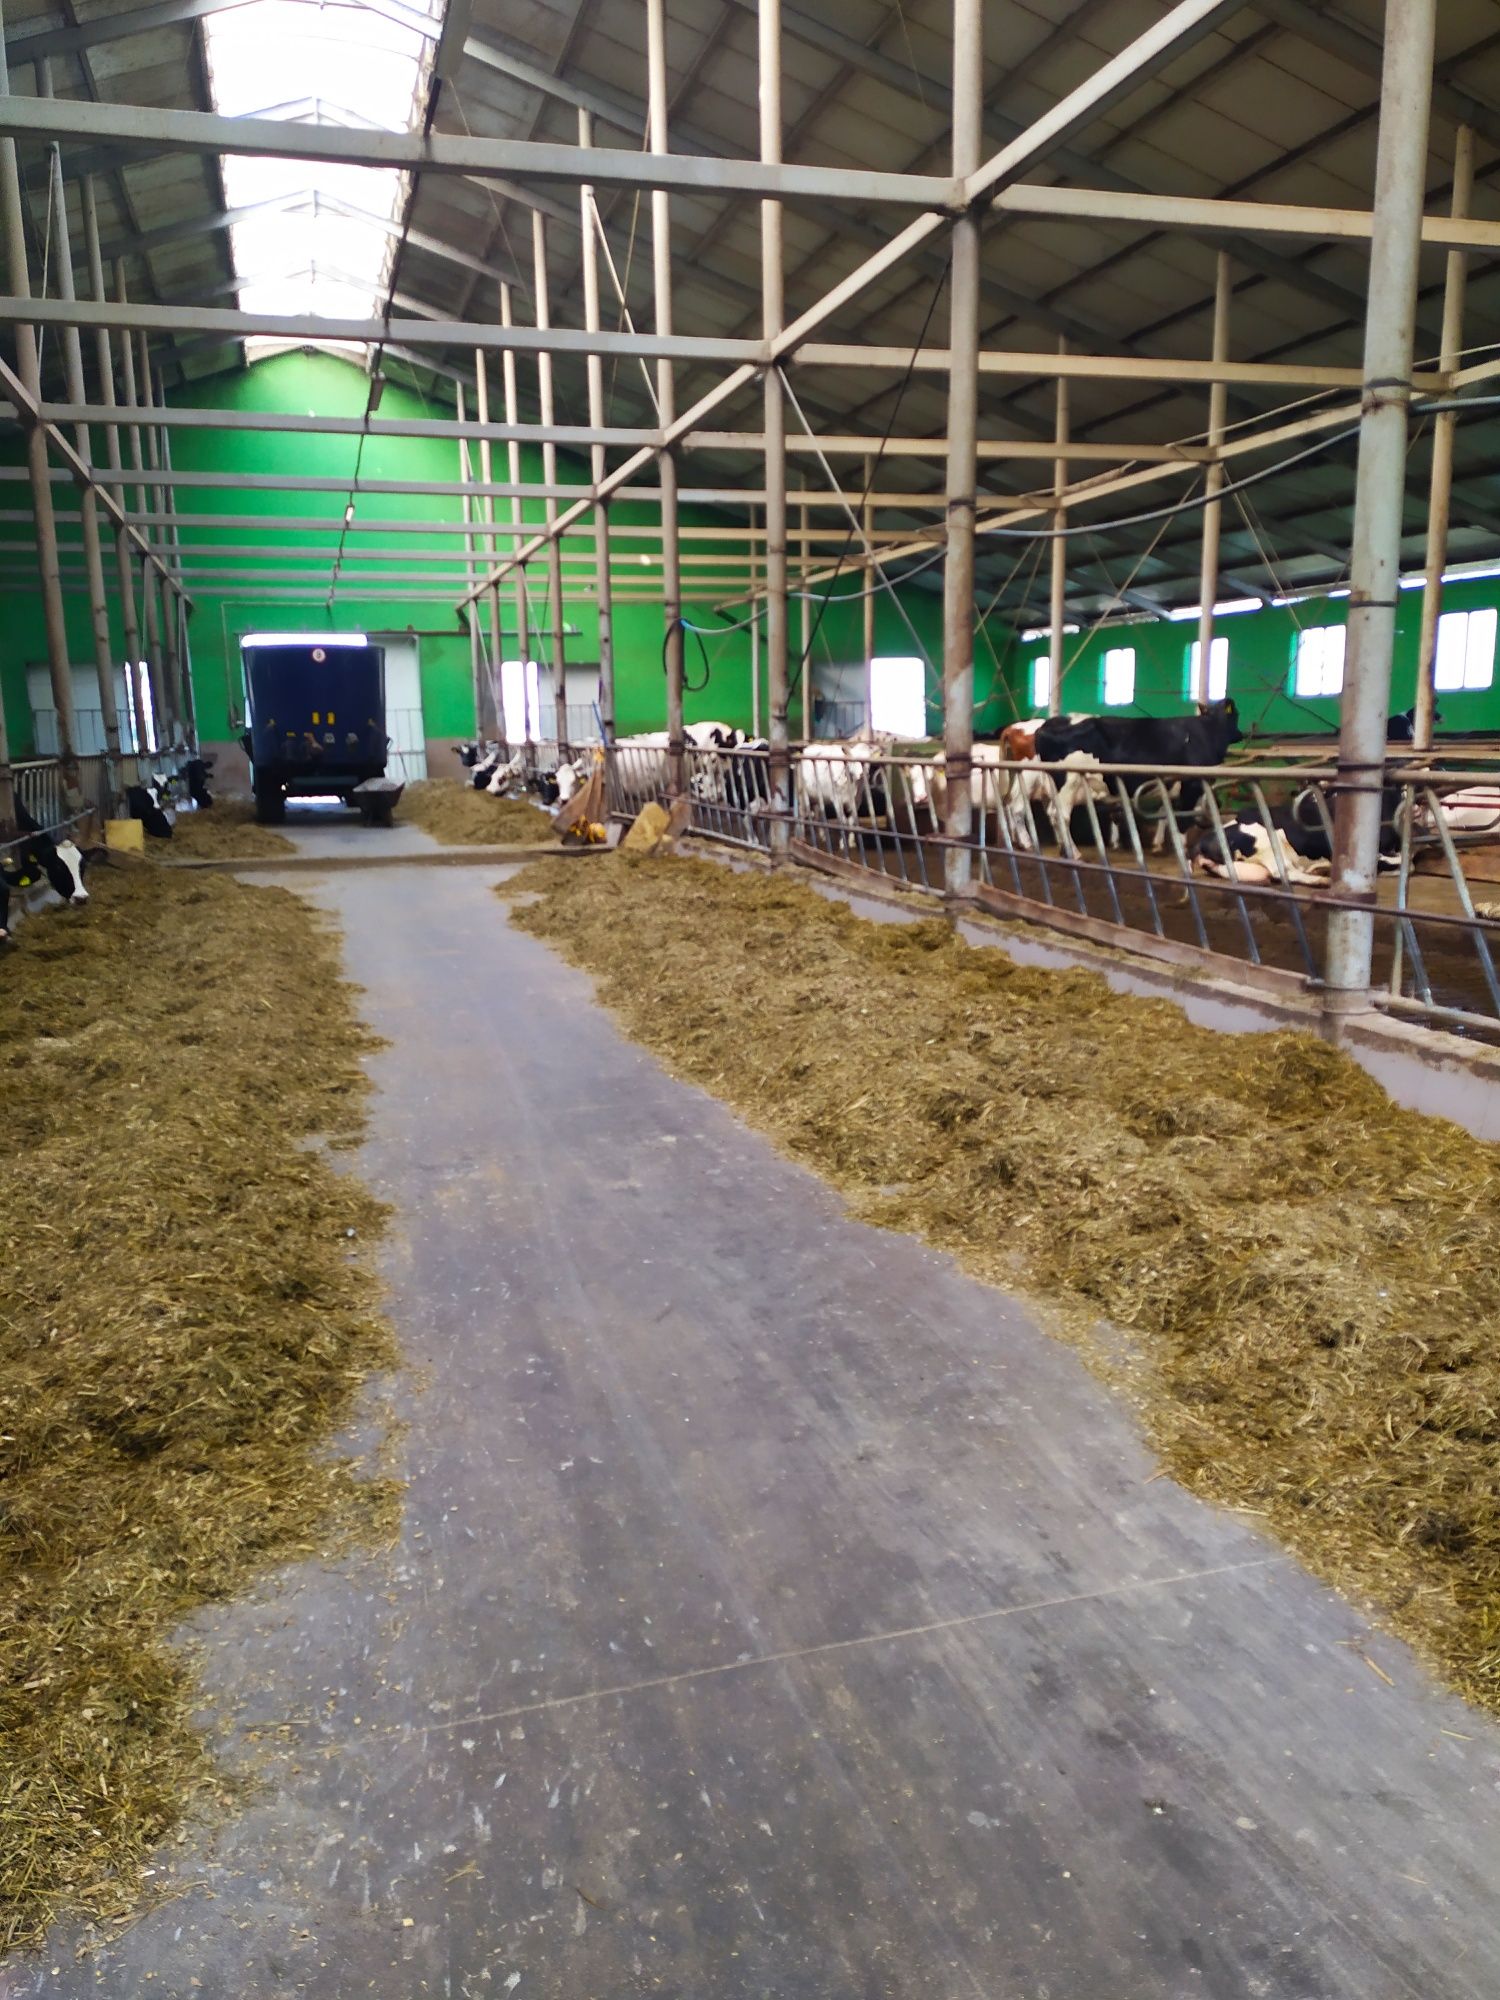 Gospodarstwo rolne - krowy mleczne